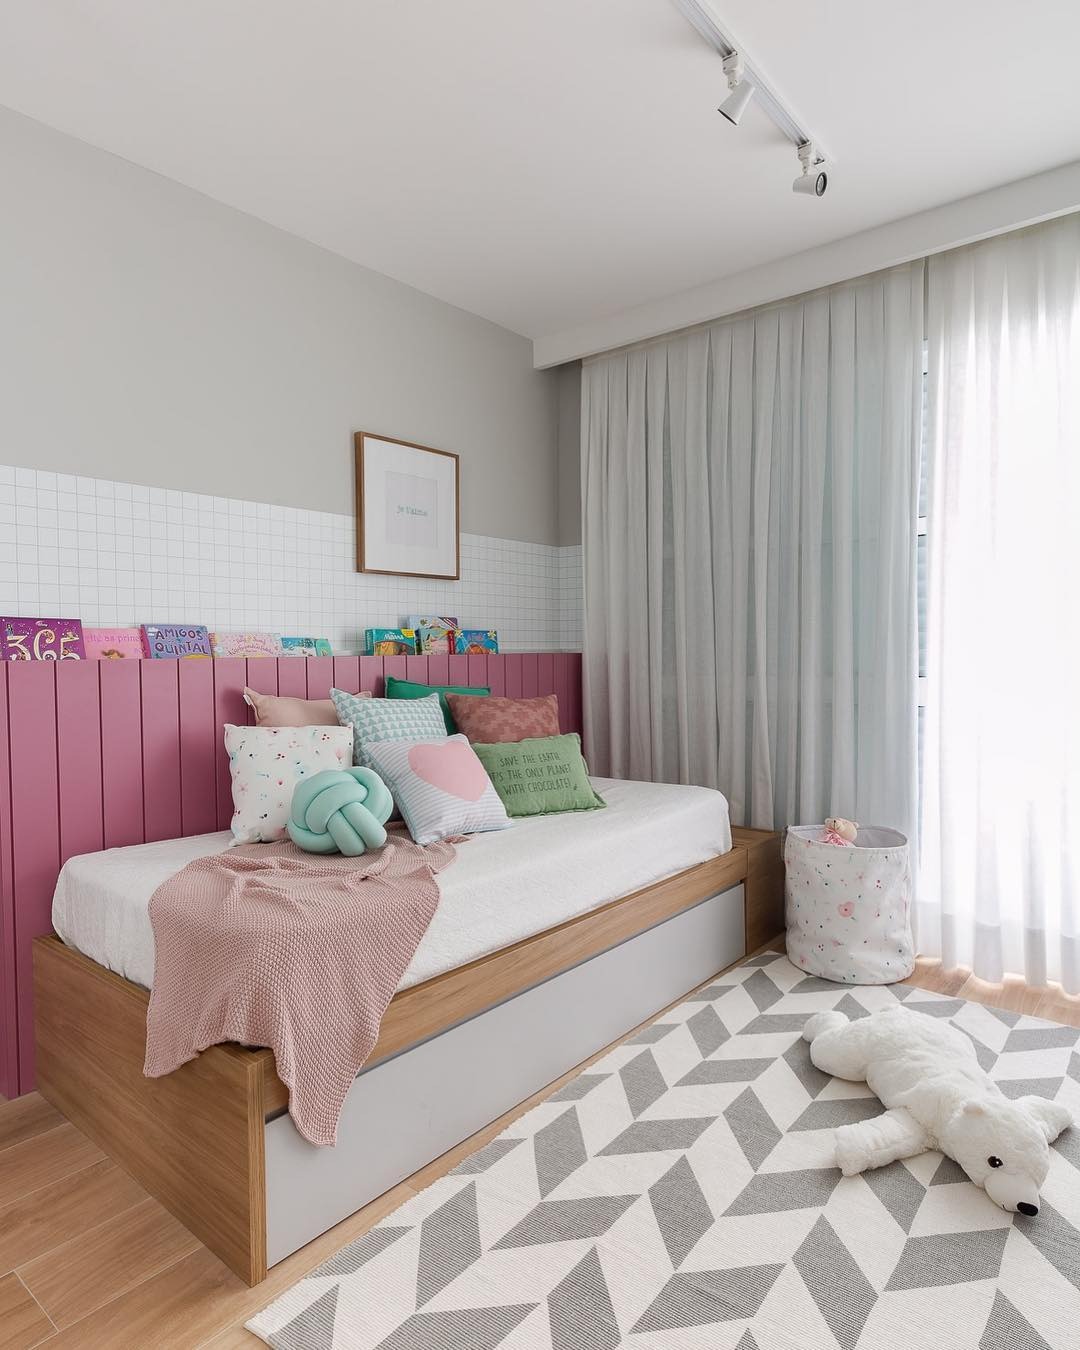 Mẹo hay khi trang trí phòng ngủ nhỏ theo phong cách đơn giản mà đẹp